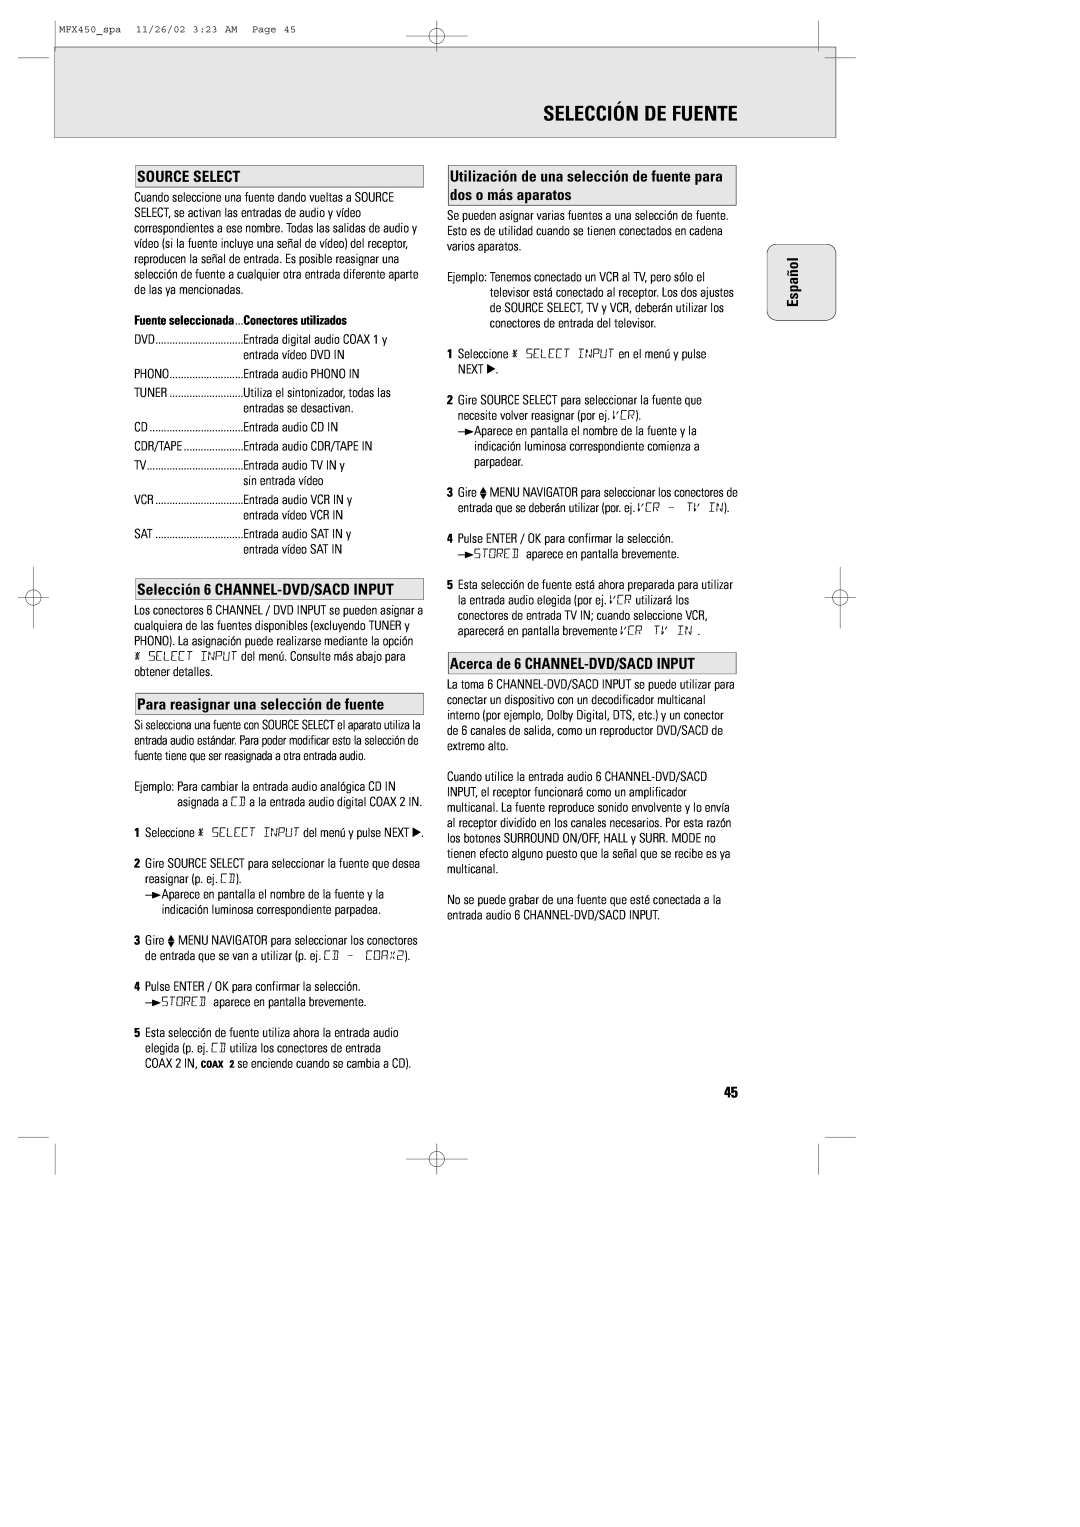 Magnavox MCS 990/17 manual Selección De Fuente, Selección 6 CHANNEL-DVD/SACDINPUT, Para reasignar una selección de fuente 